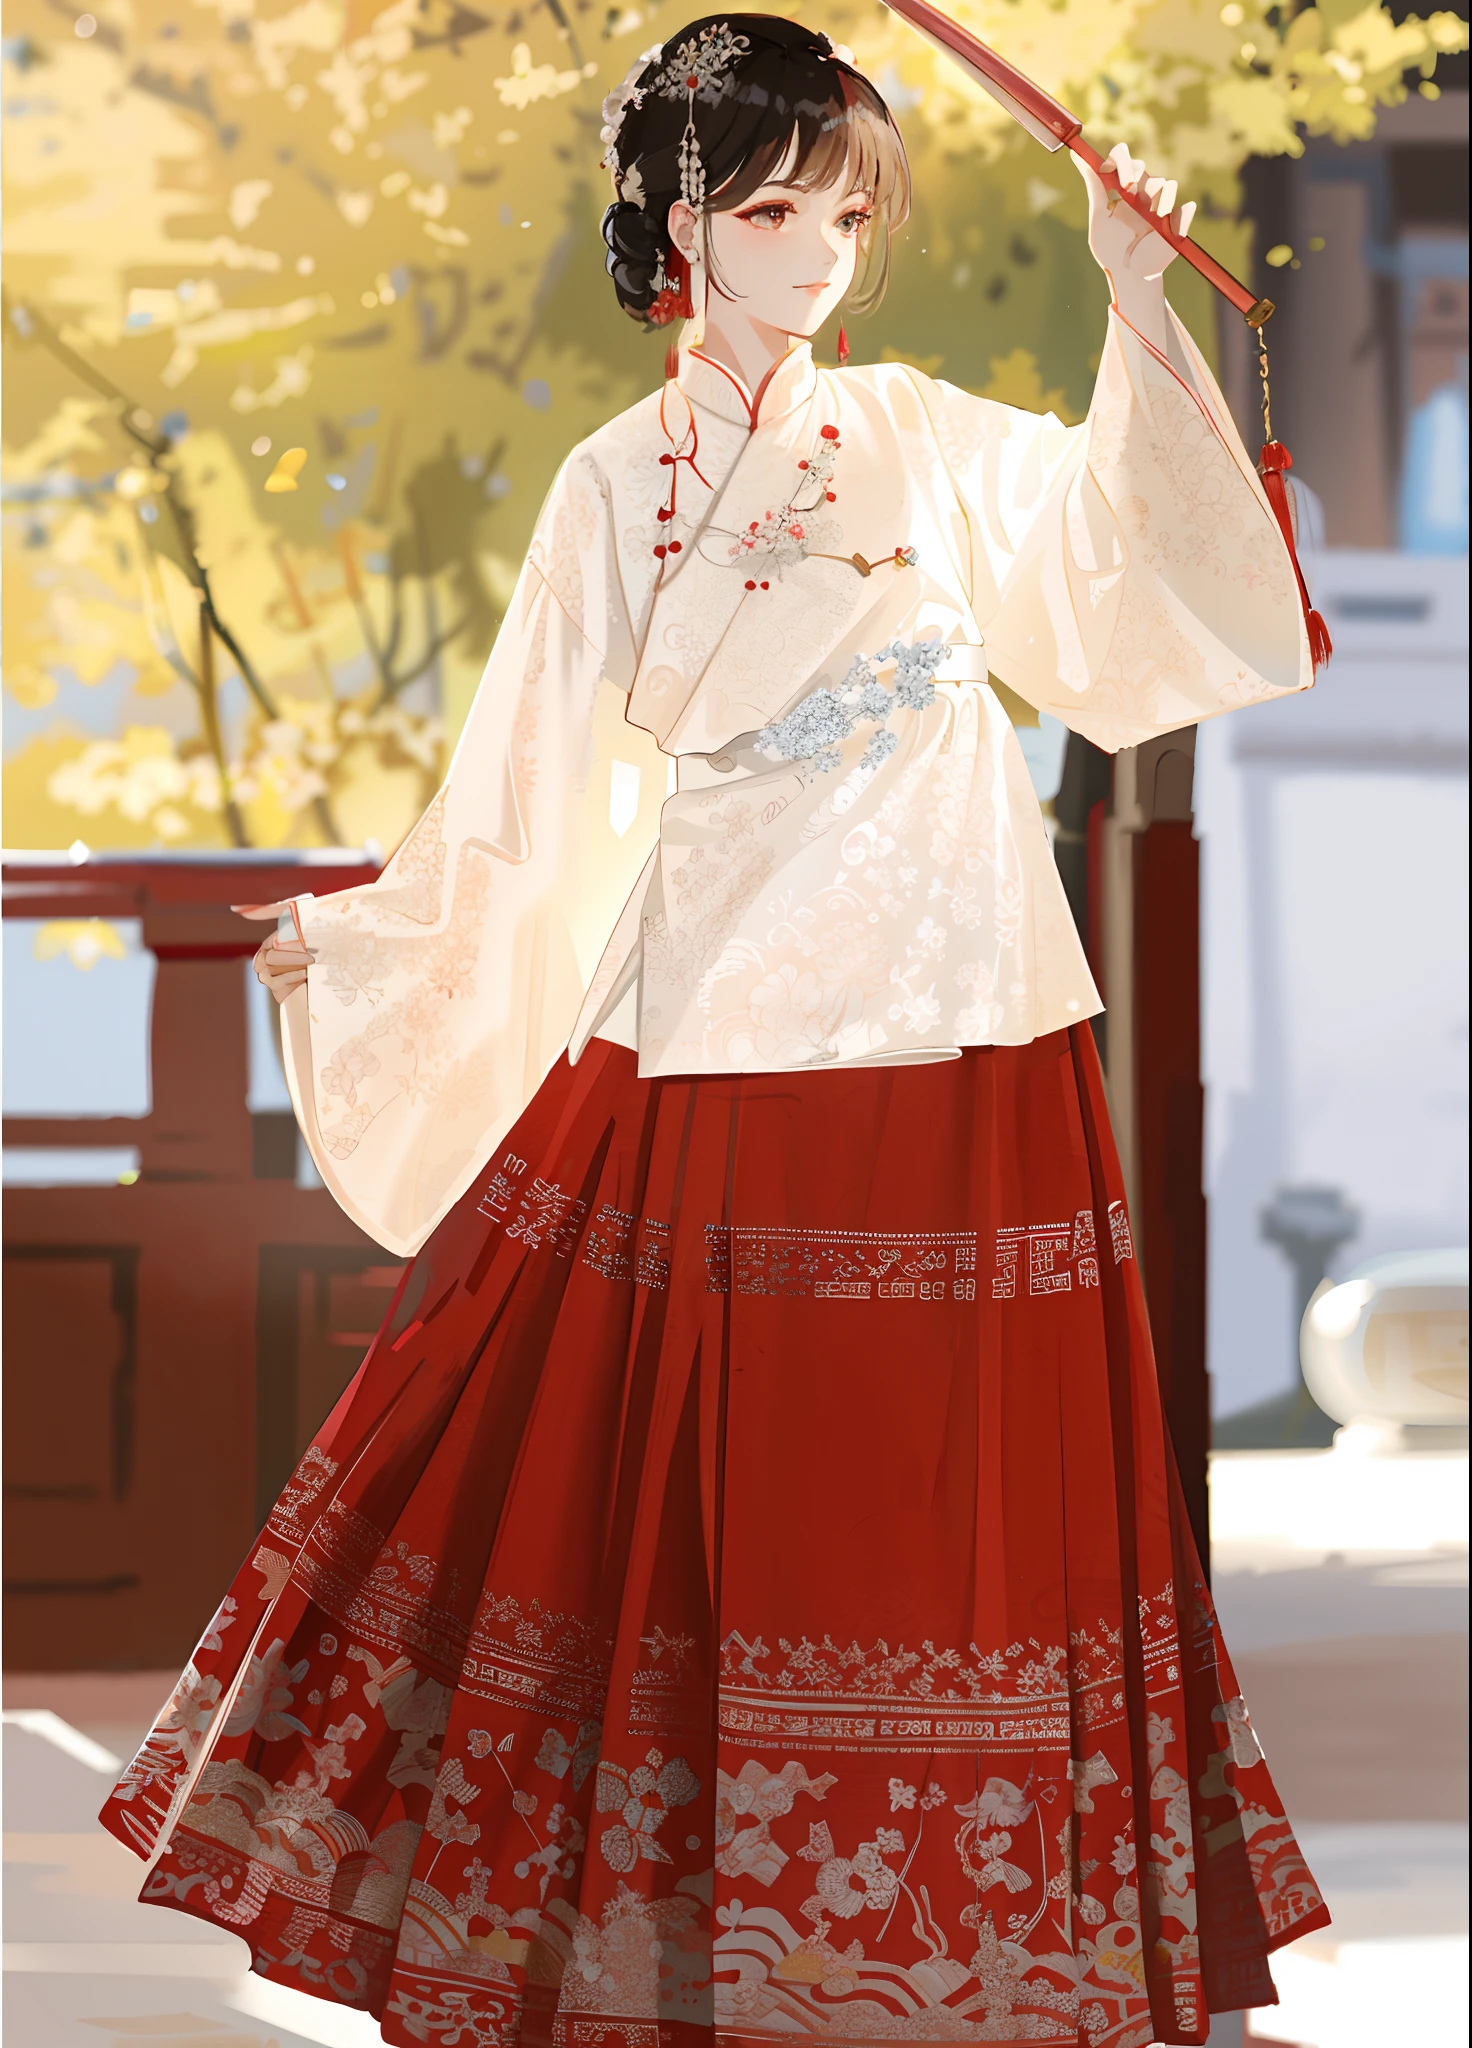 امرأة ترتدي فستانًا أحمر وأبيض وتحمل مظلة حمراء，هانفو，هانفو الأبيض，القصور，com.hanfugirl，ارتداء الملابس الصينية القديمة，الملابس الصينية التقليدية，يرتدي الزي الصيني القديم，تقاليد صينية，يرتدي ملابس حريرية رائعة，الزي الصيني，الملابس الملكية الأنيقة，نمط صيني，أميرة السلالة الآسيوية القديمة